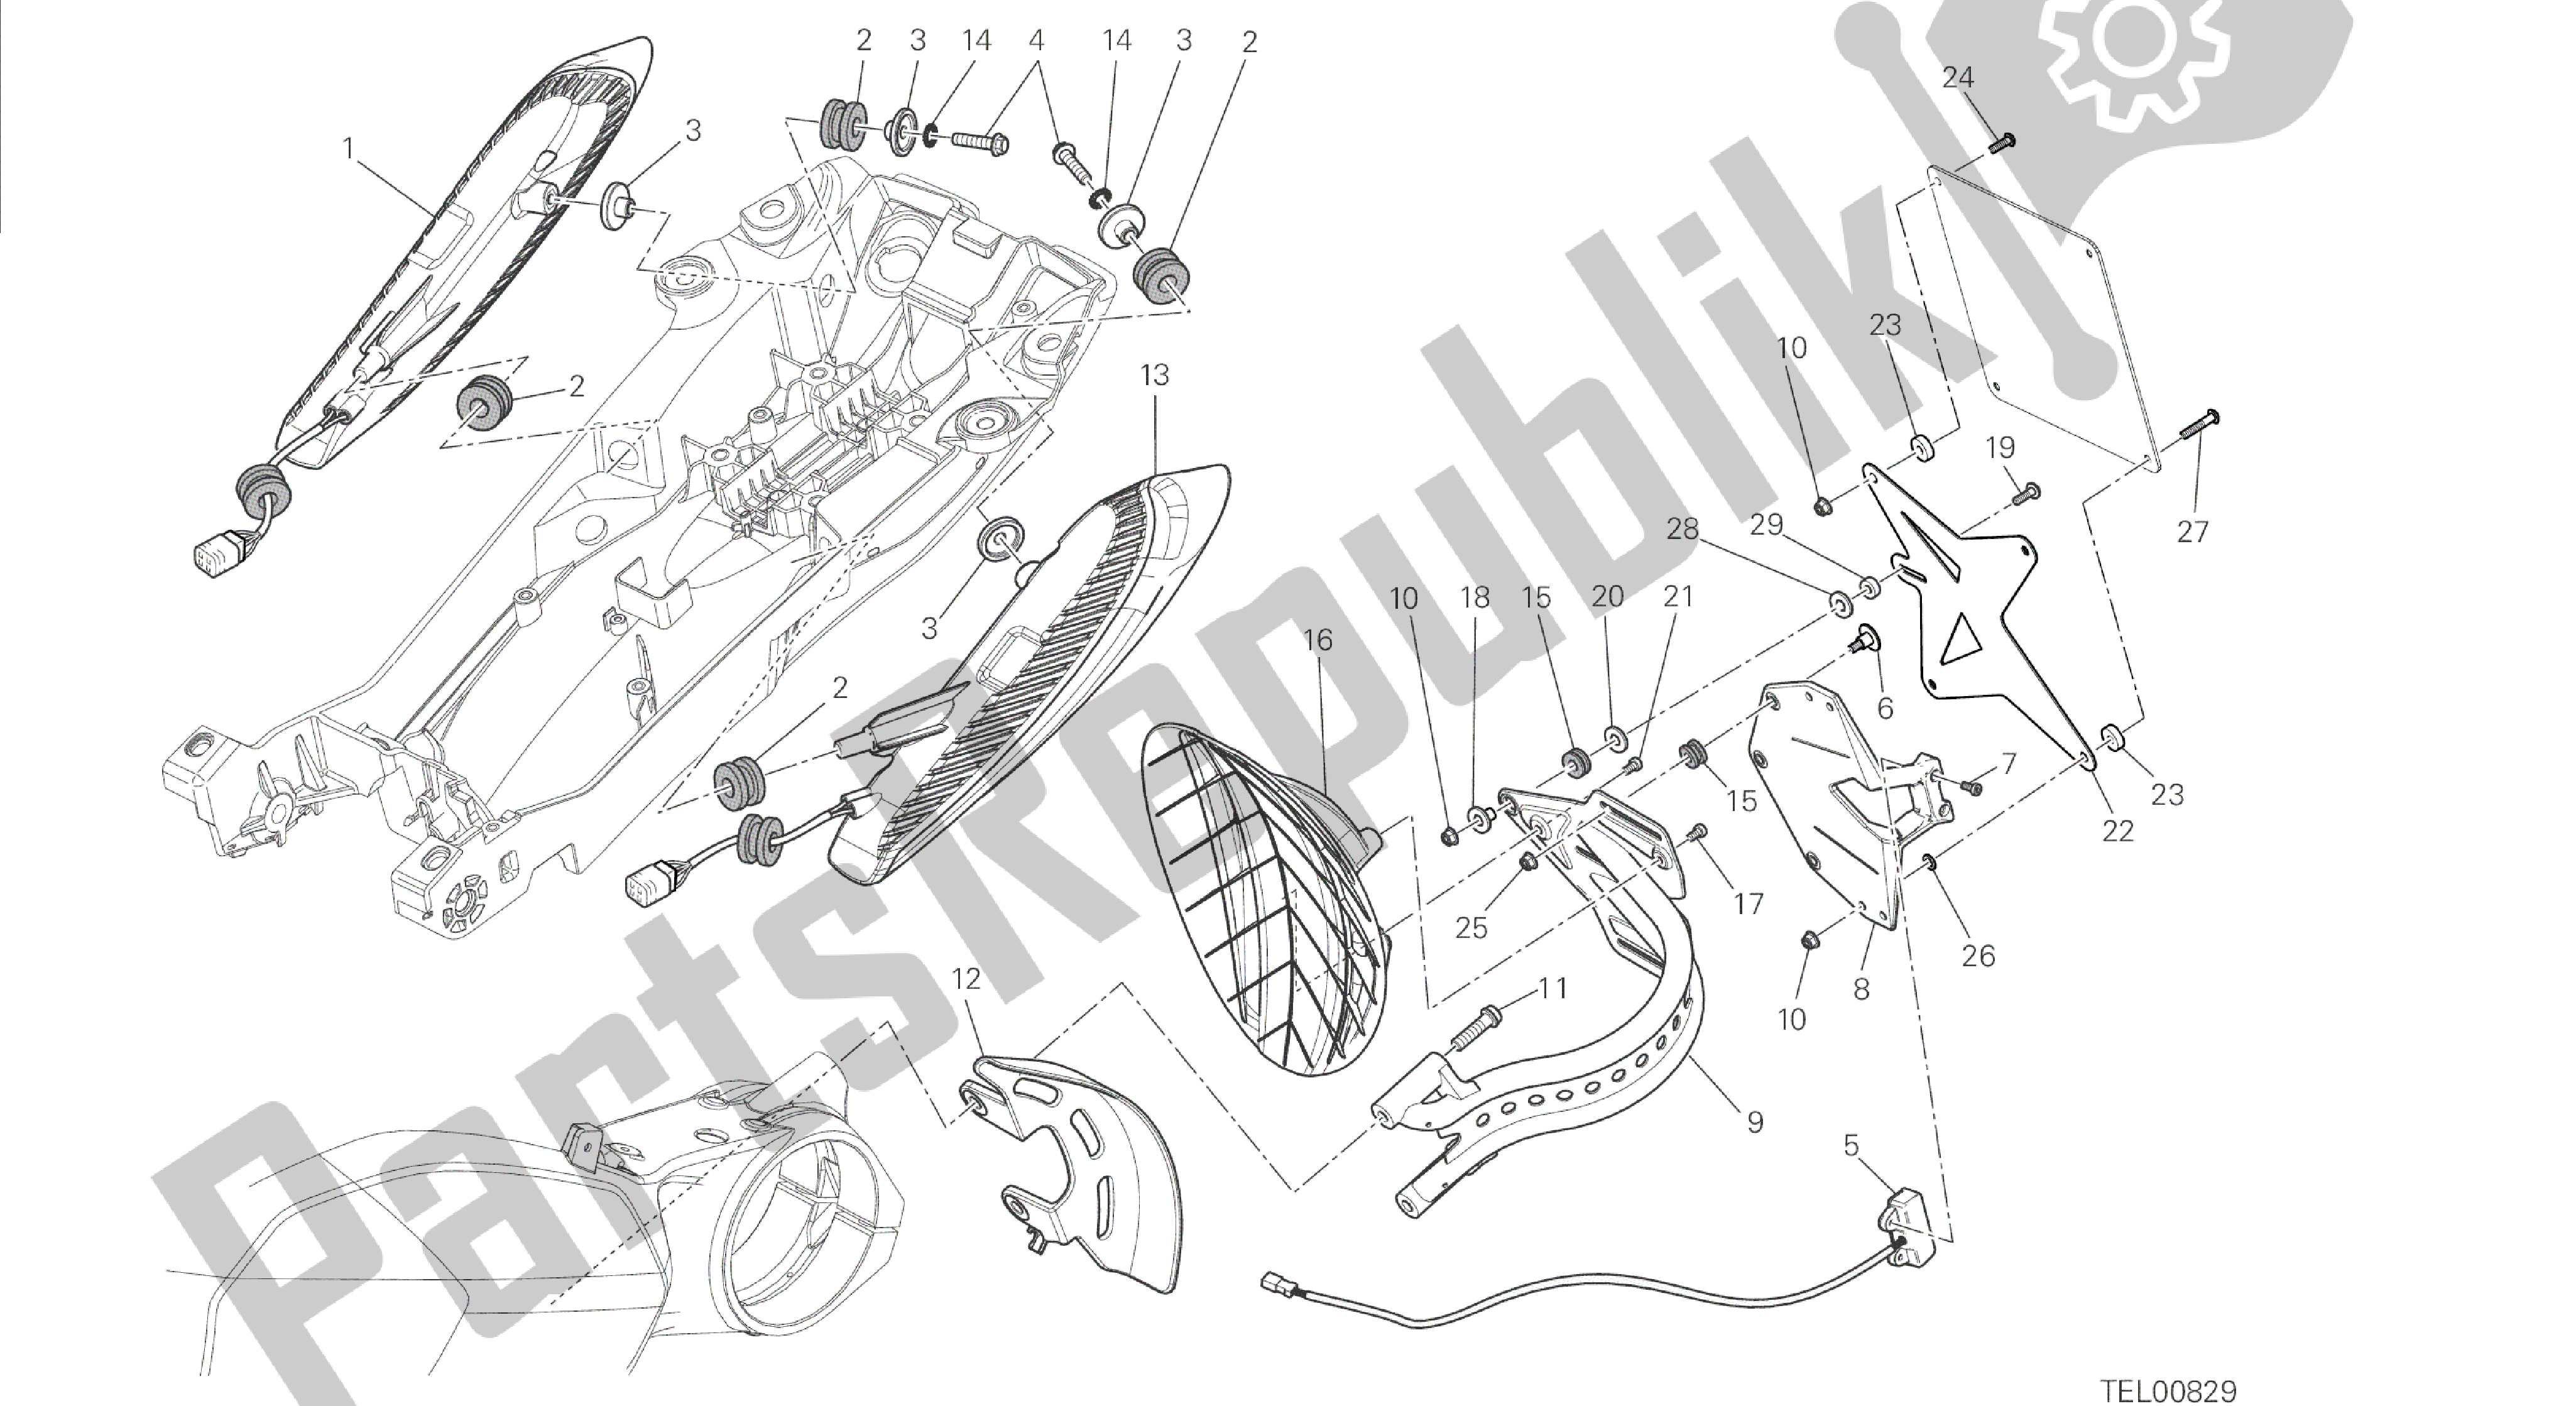 Tutte le parti per il Disegno 27a - Portatarga - Fanale Posteriore [mod: Dvl; Xst: Eur, Fra, Jap] Gruppo Elettrico del Ducati Diavel 1200 2014